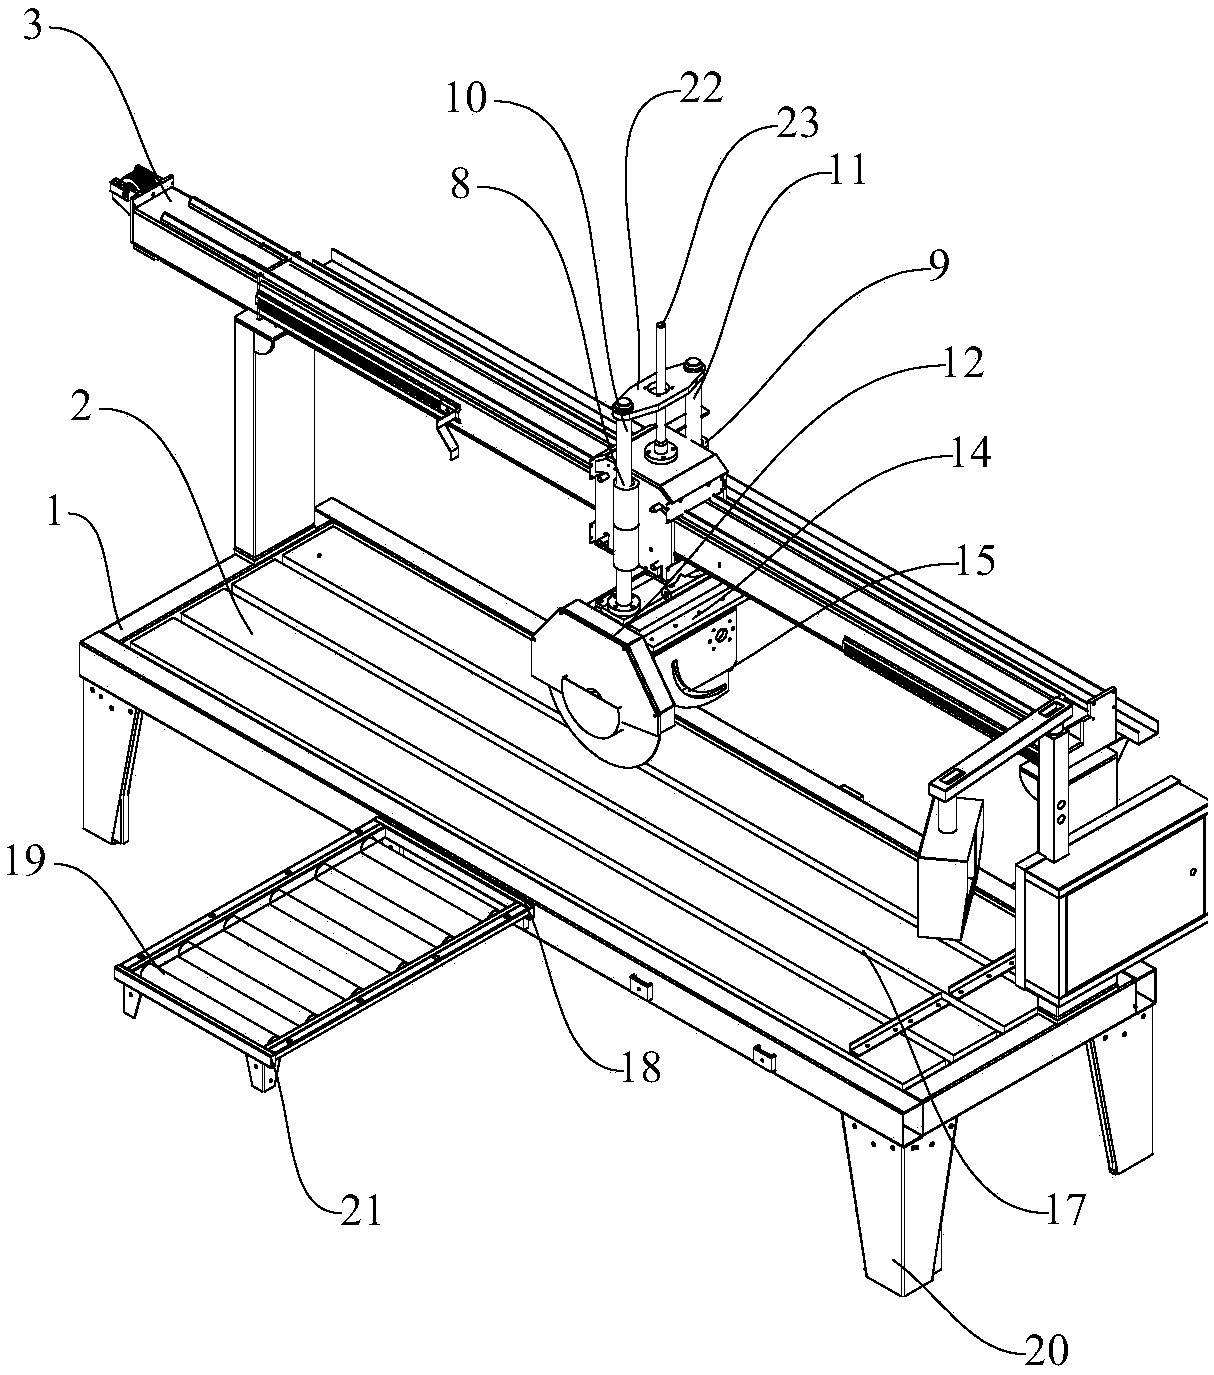 Integrated cutting machine